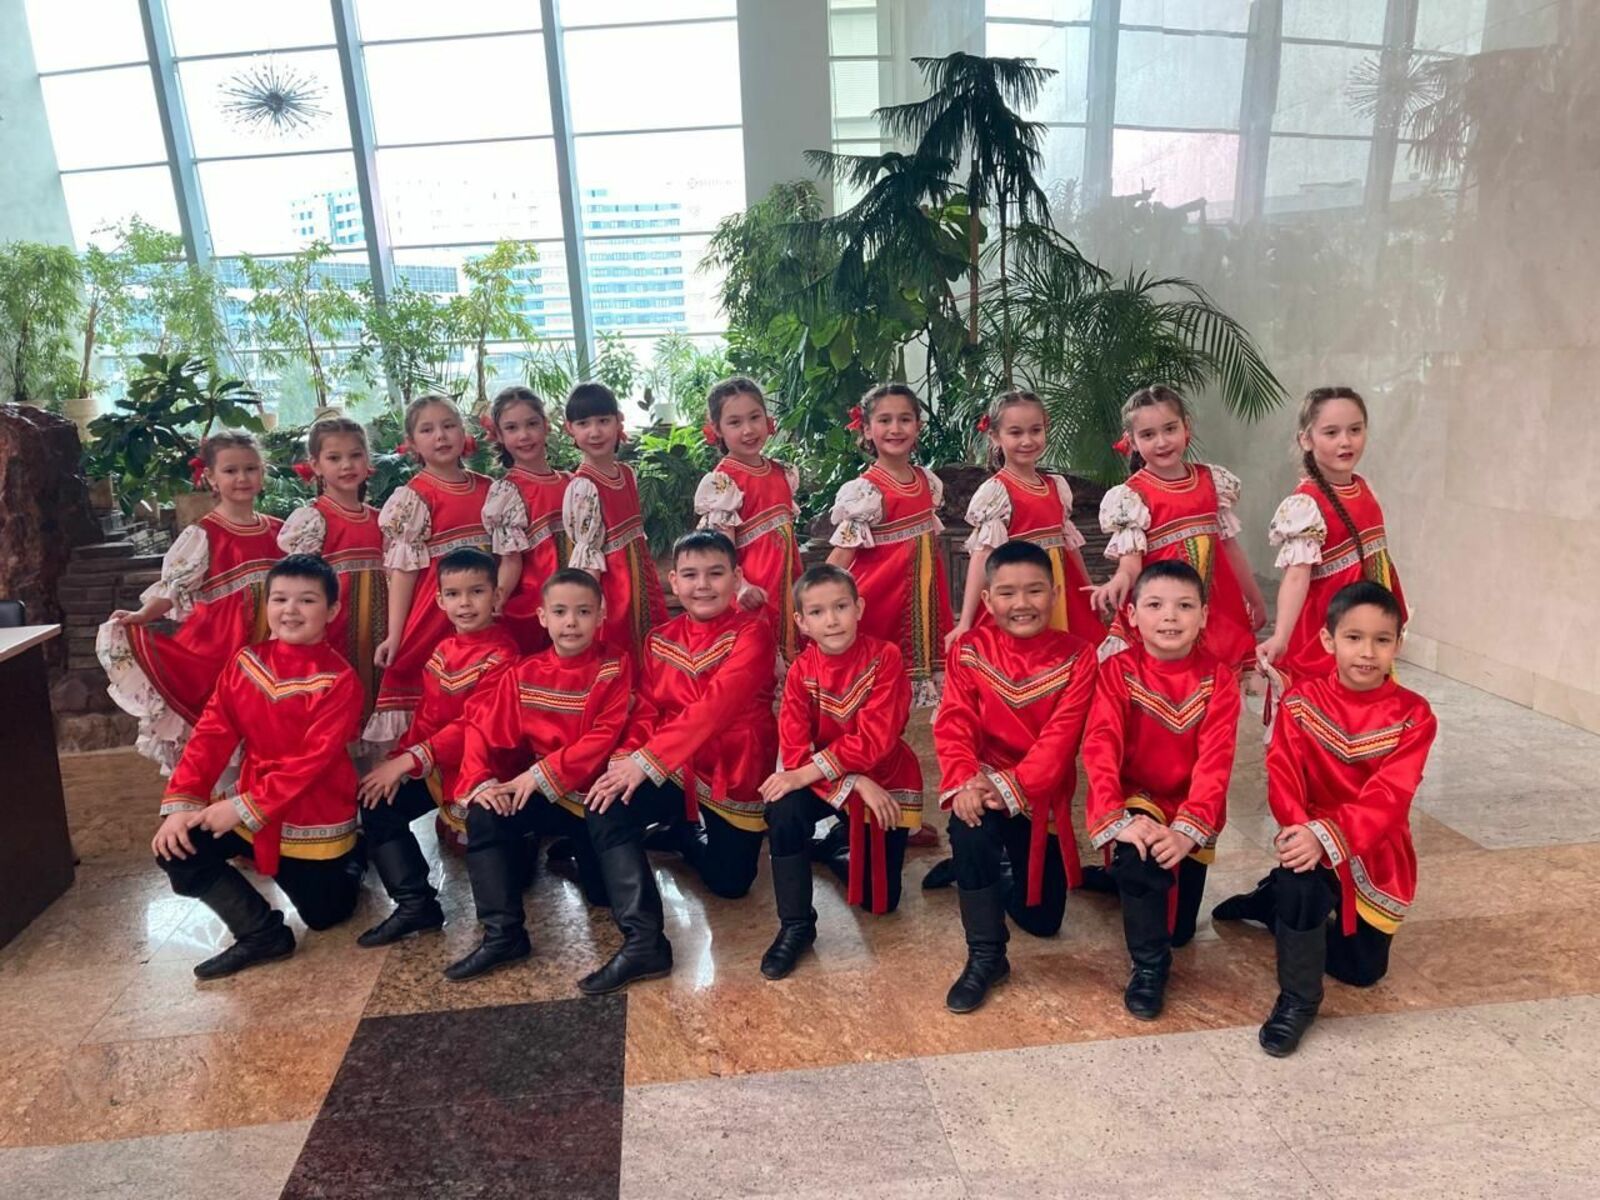 Ансамбль народного танца "Тюлькас" продемонстрировал высокие результаты на международном фестивале в Уфе